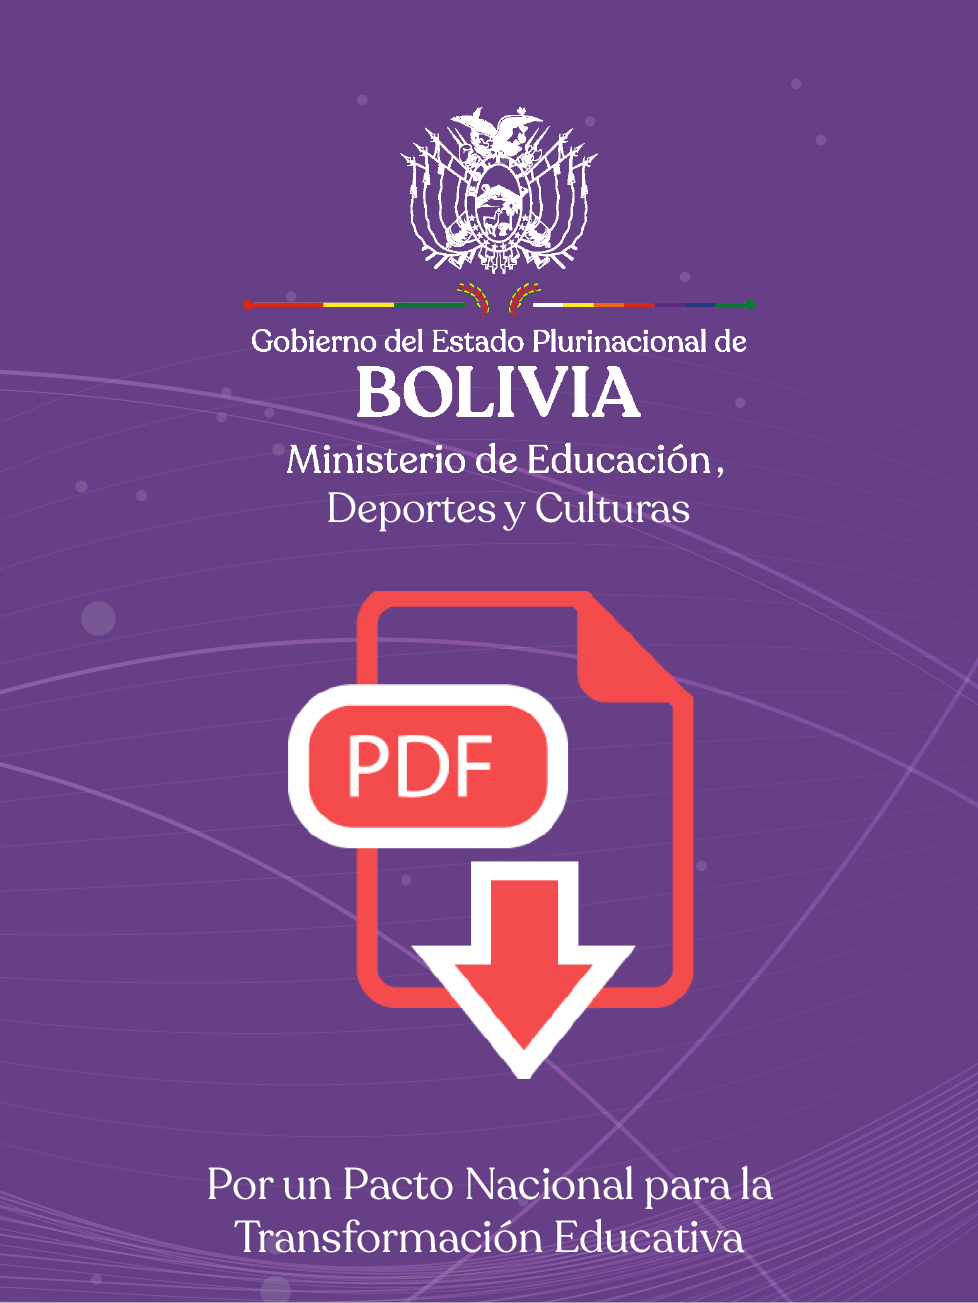 Universidades Privadas Legalmente Establecidas en Bolivia sedes y subsedes académicas carreras de pre y post grado